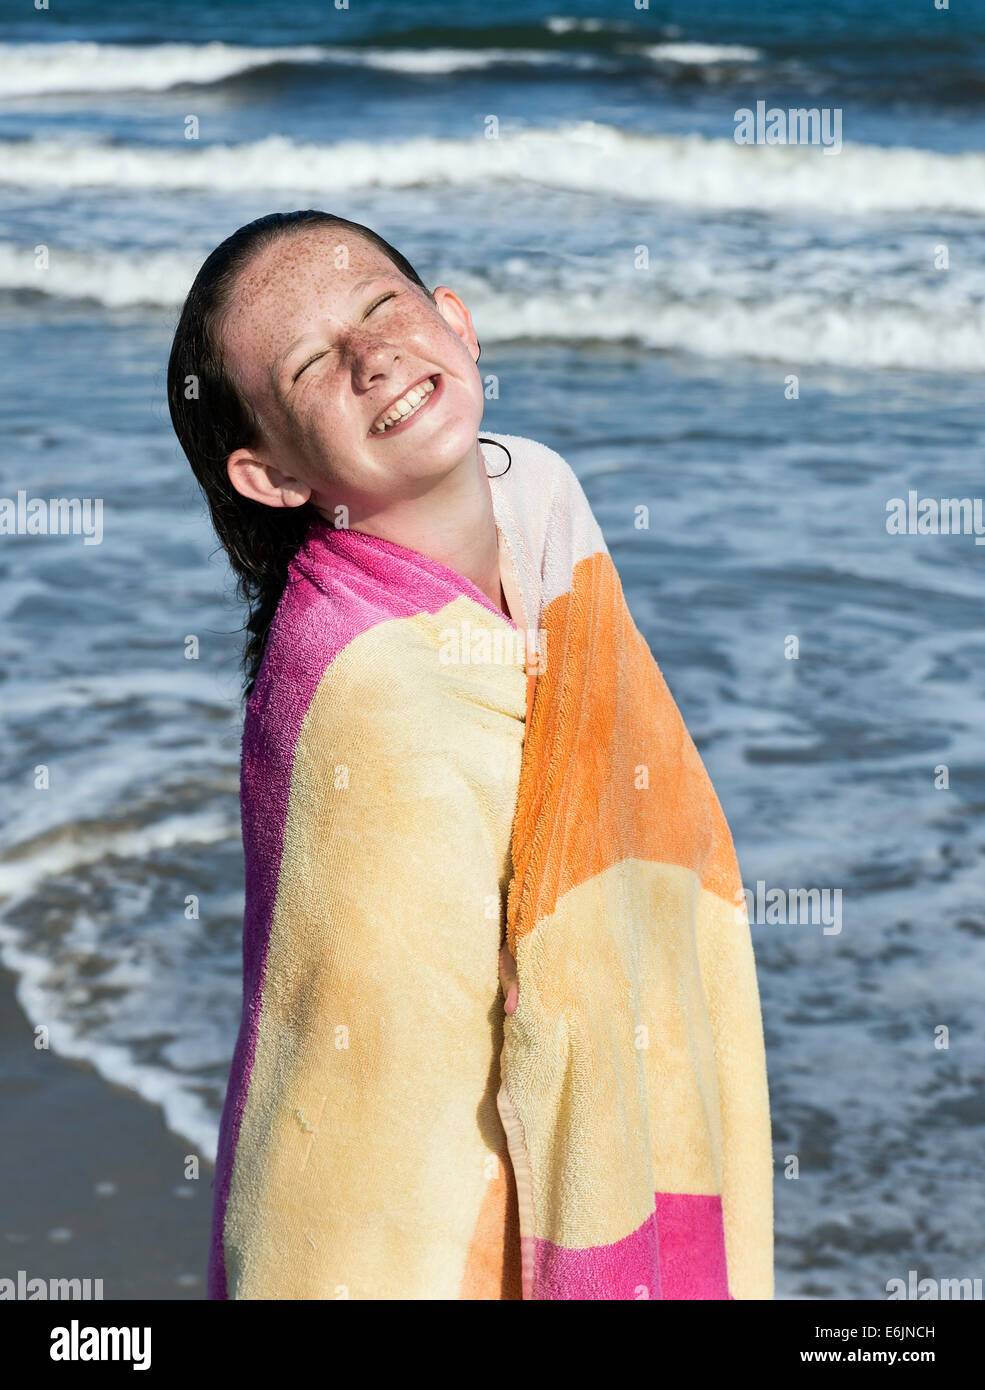 Lindo joven secado con una toalla de playa. Foto de stock